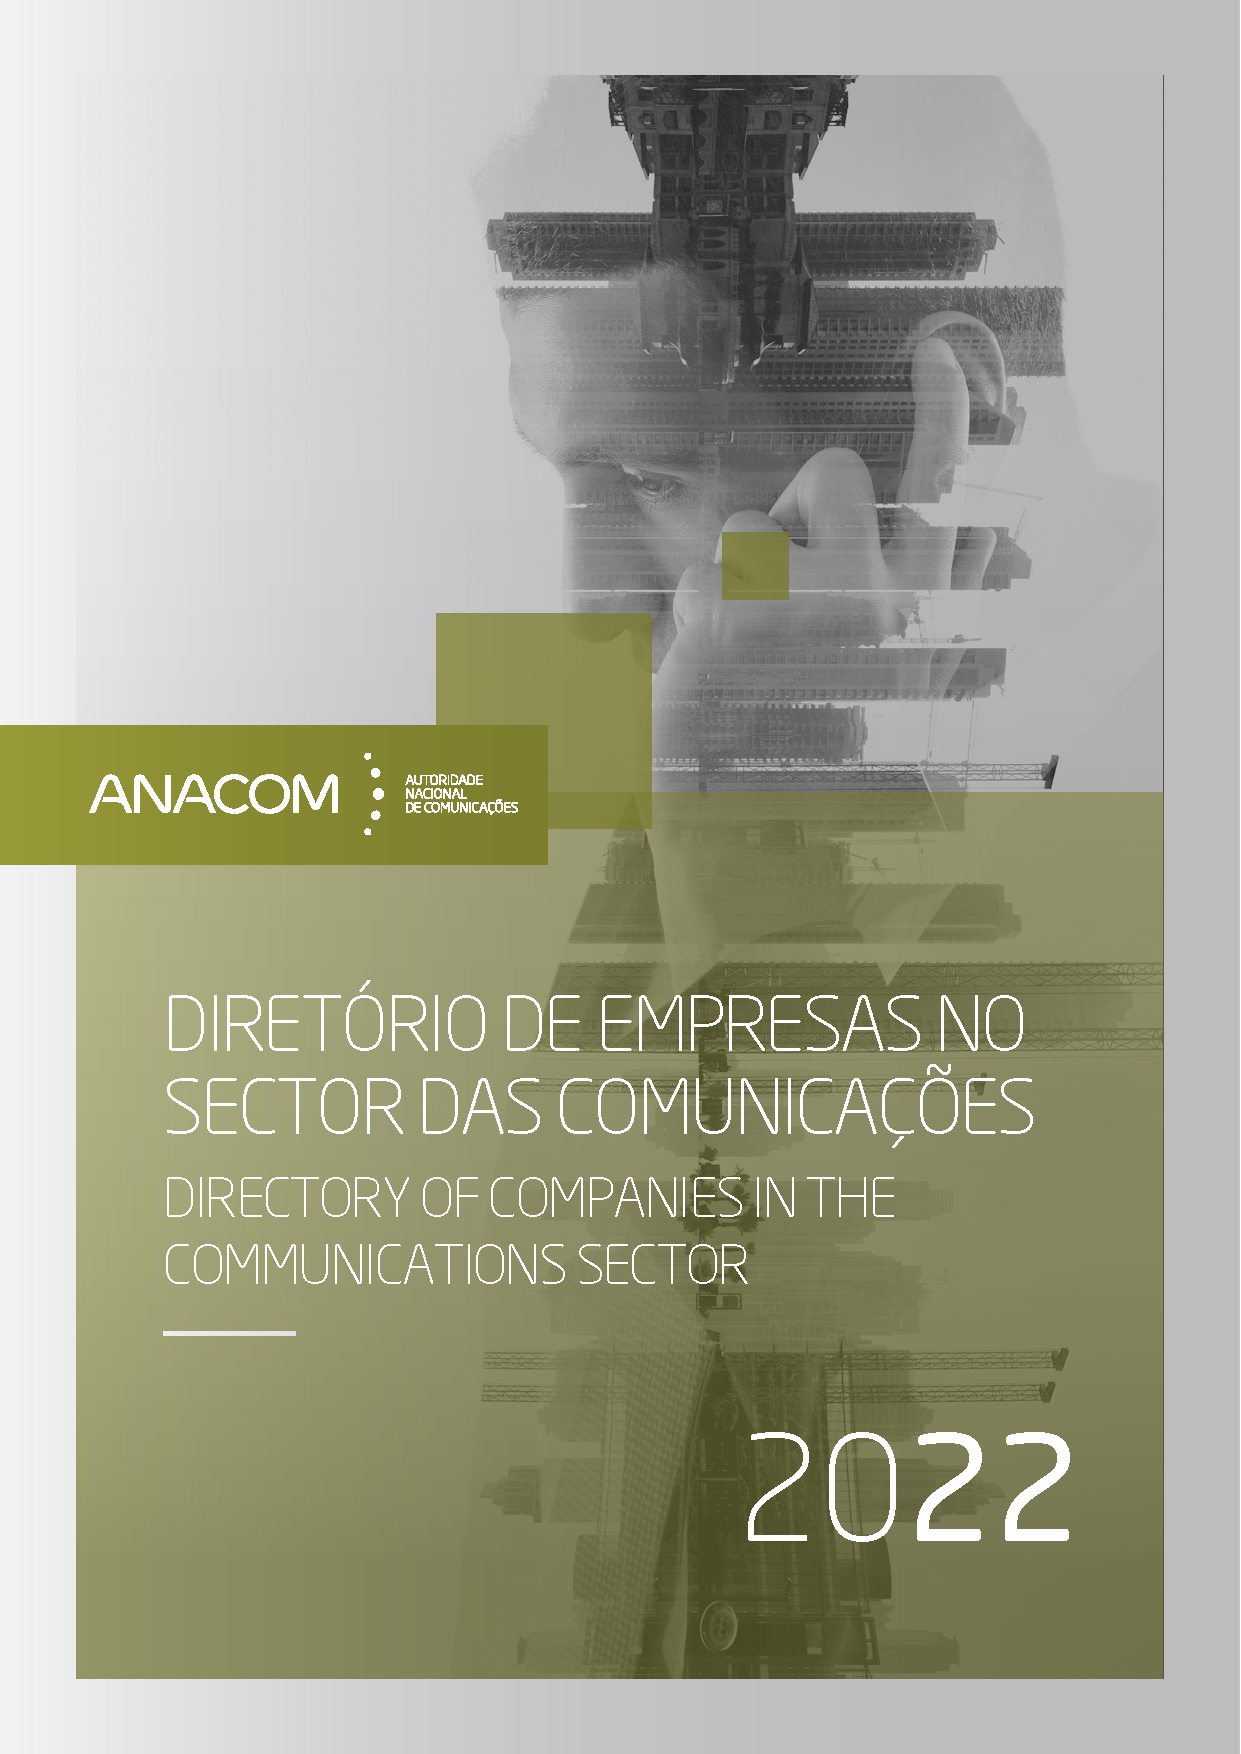 Imagem da capa do Diretório de Empresas no Sector das Comunicações 2022.